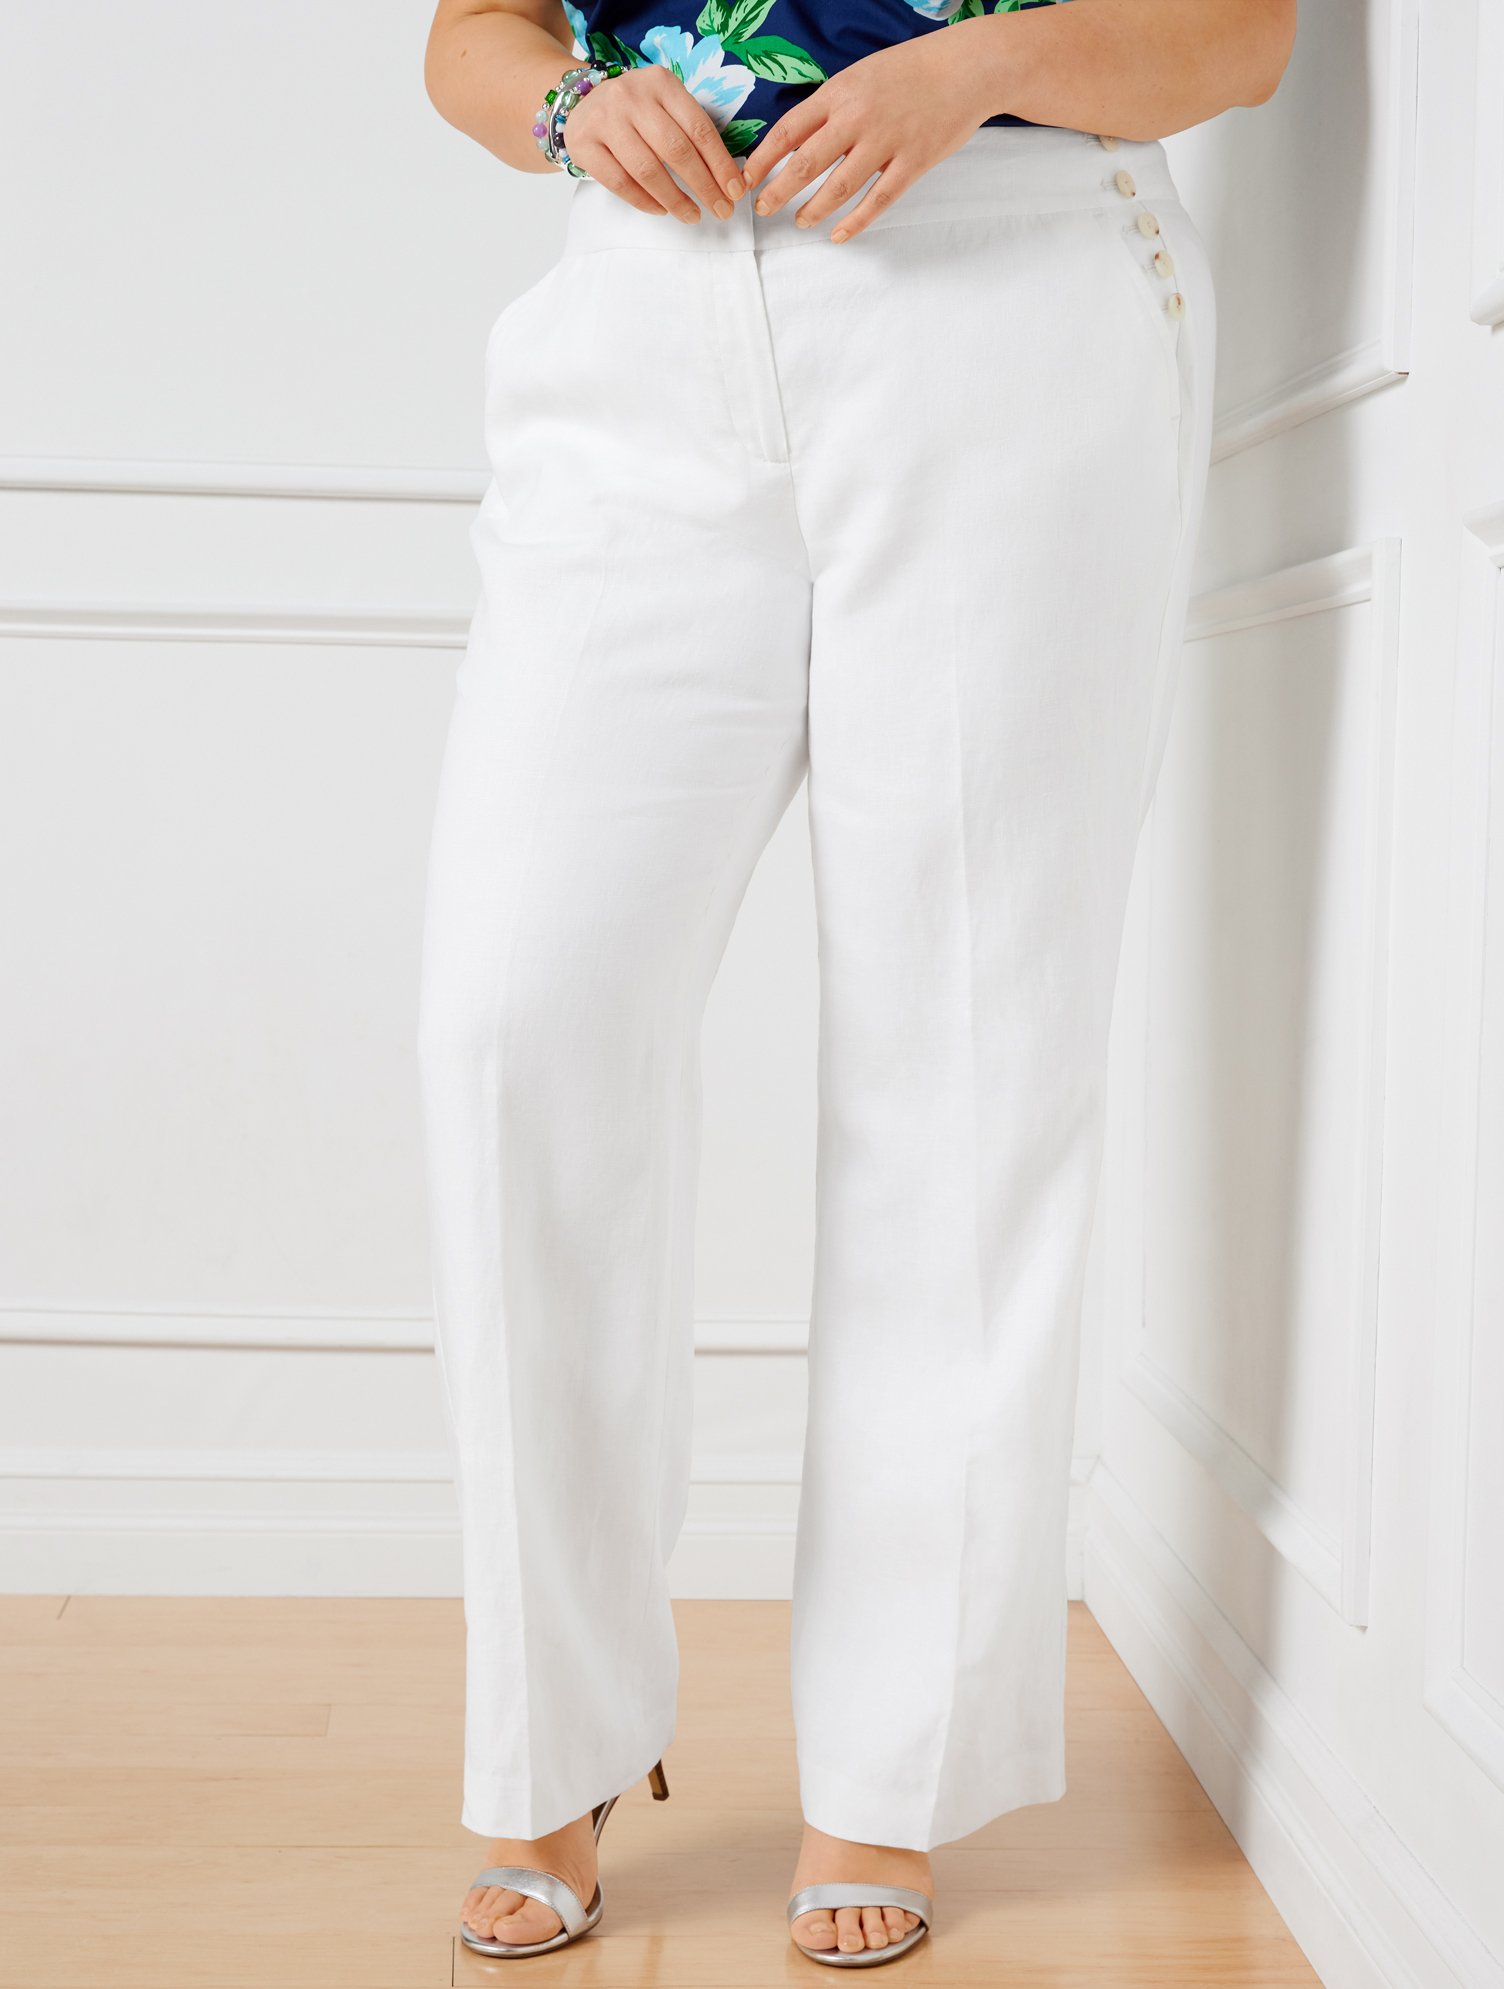 Talbots Greenwich Linen Pants - White - 22